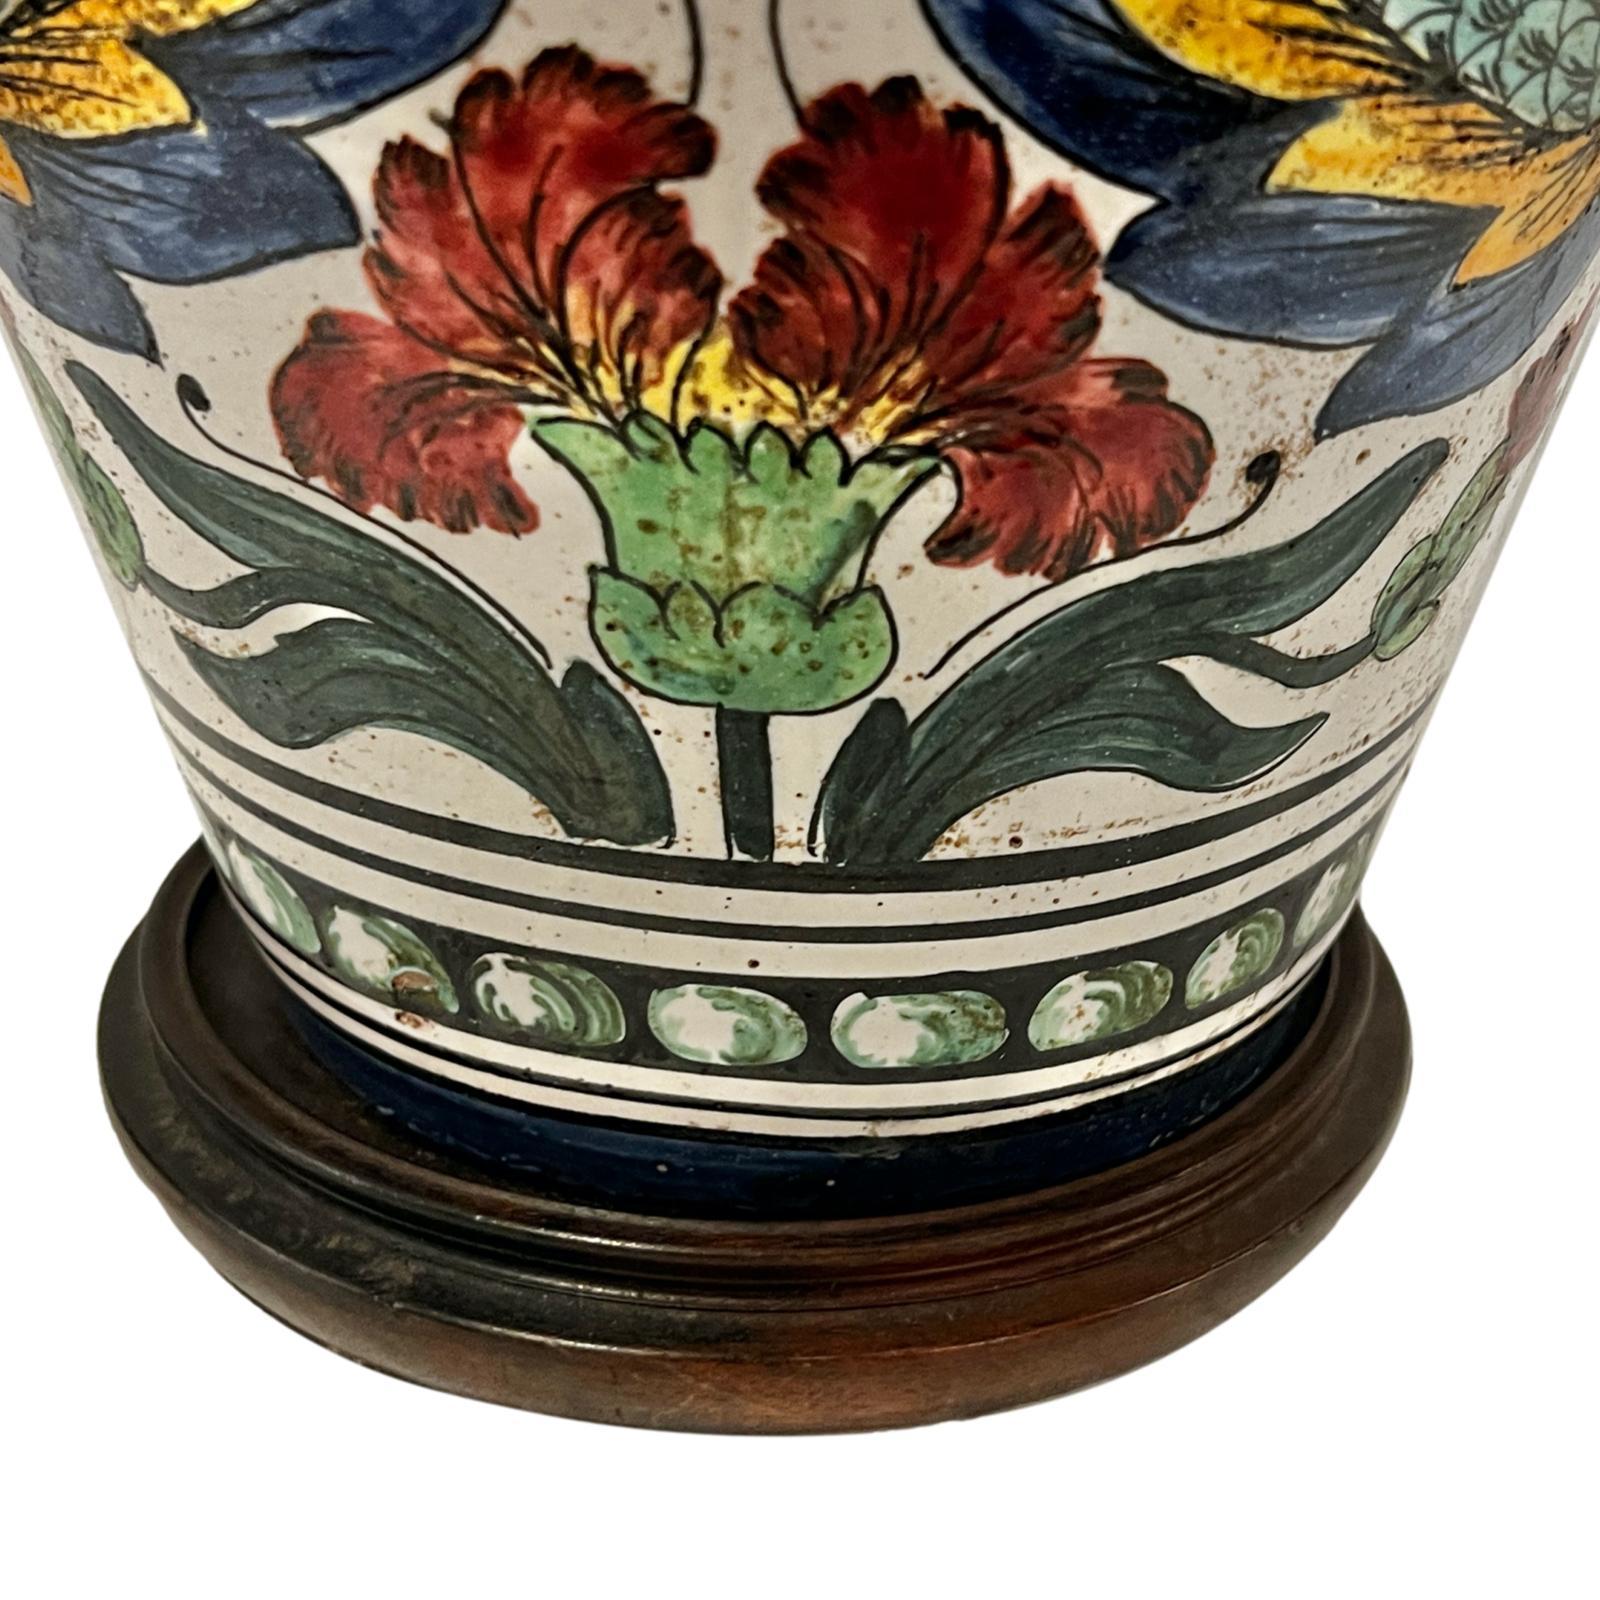 Lampe à fleurs en céramique italienne, datant des années 1920, avec des œillets et des lys.

Mesures :
hauteur de la caisse : 19
hauteur jusqu'à l'appui de l'abat-jour : 29
diamètre : 10